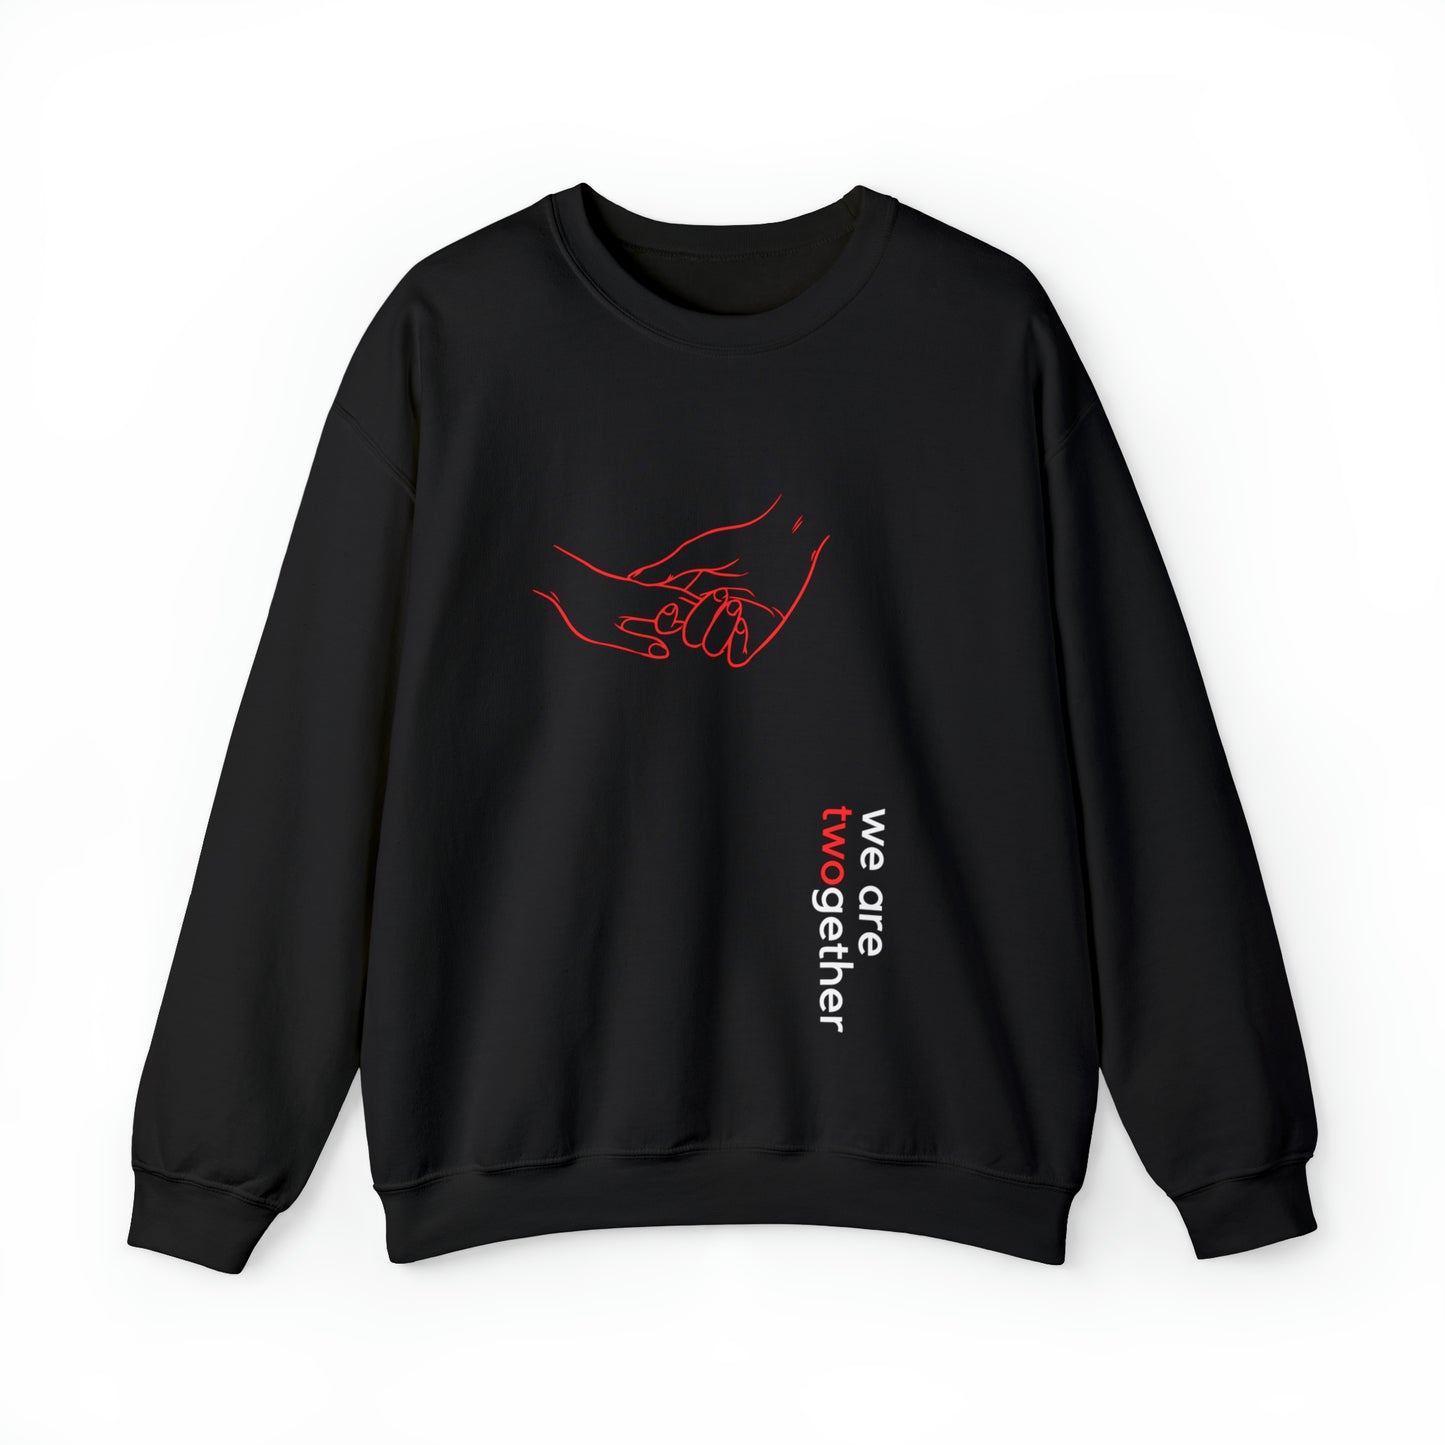 Twogether |schwarz| Unisex Heavy Blend™ Rundhals-Sweatshirt